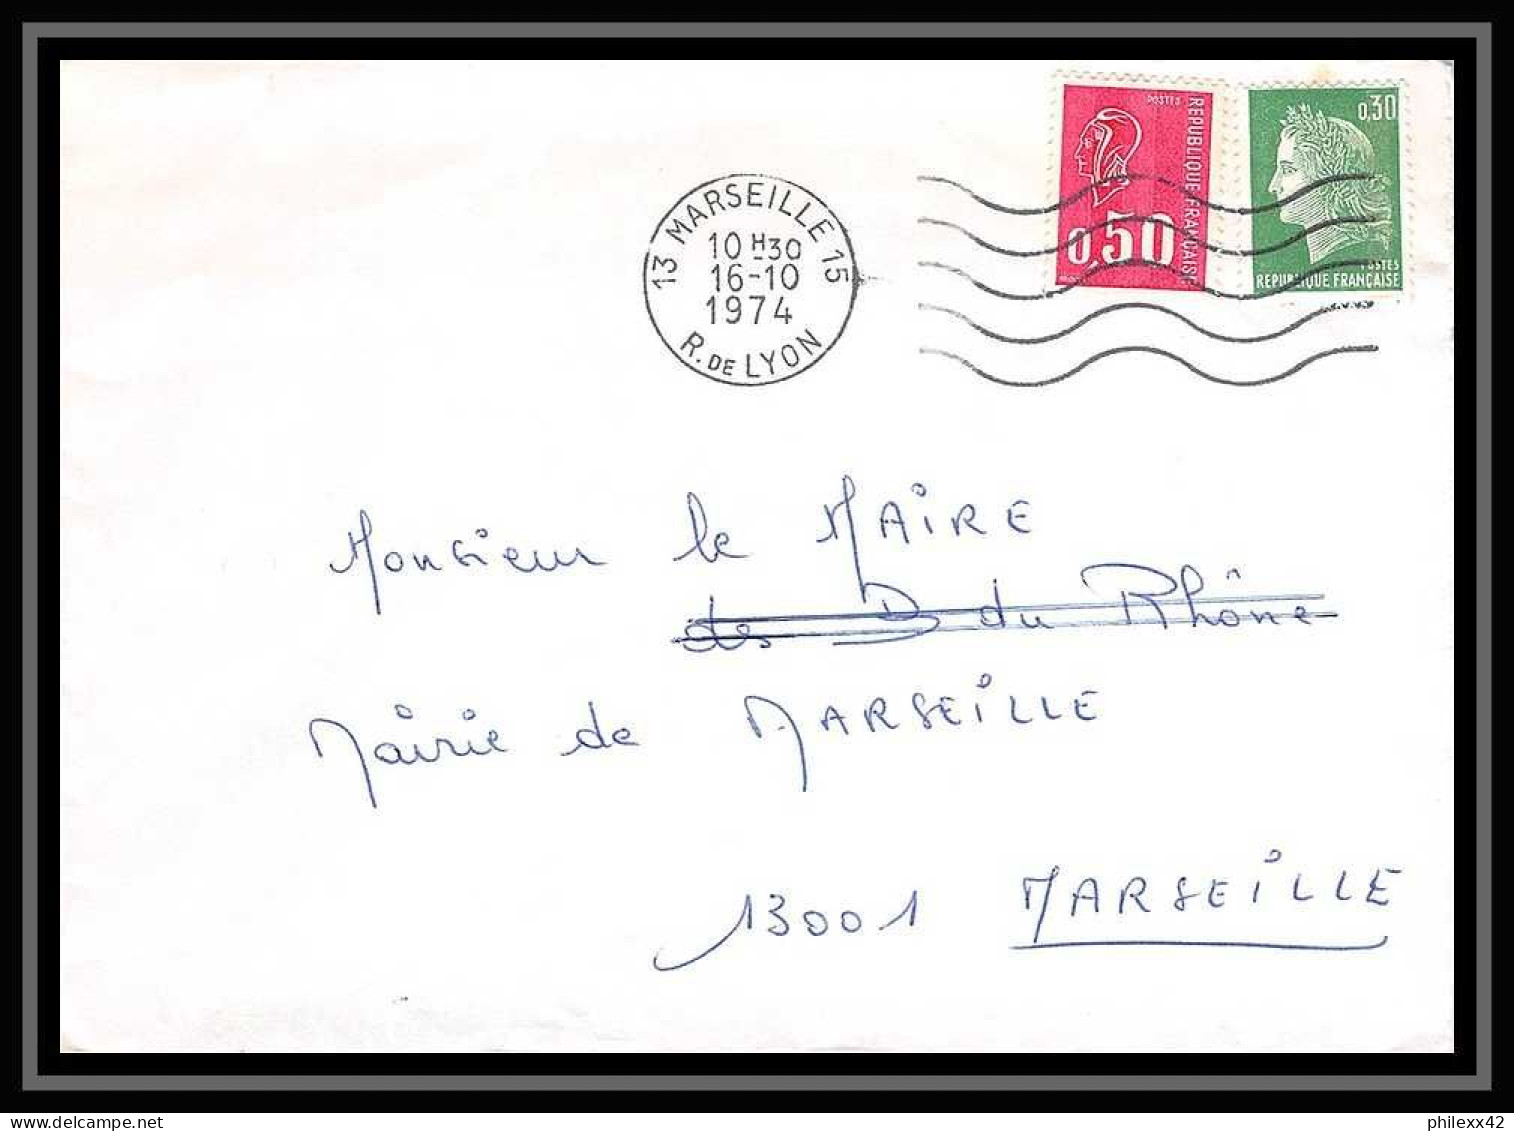 115917 lot de 15 Lettres Bouches du rhone Marseille logis neuf / 15ème roondissement